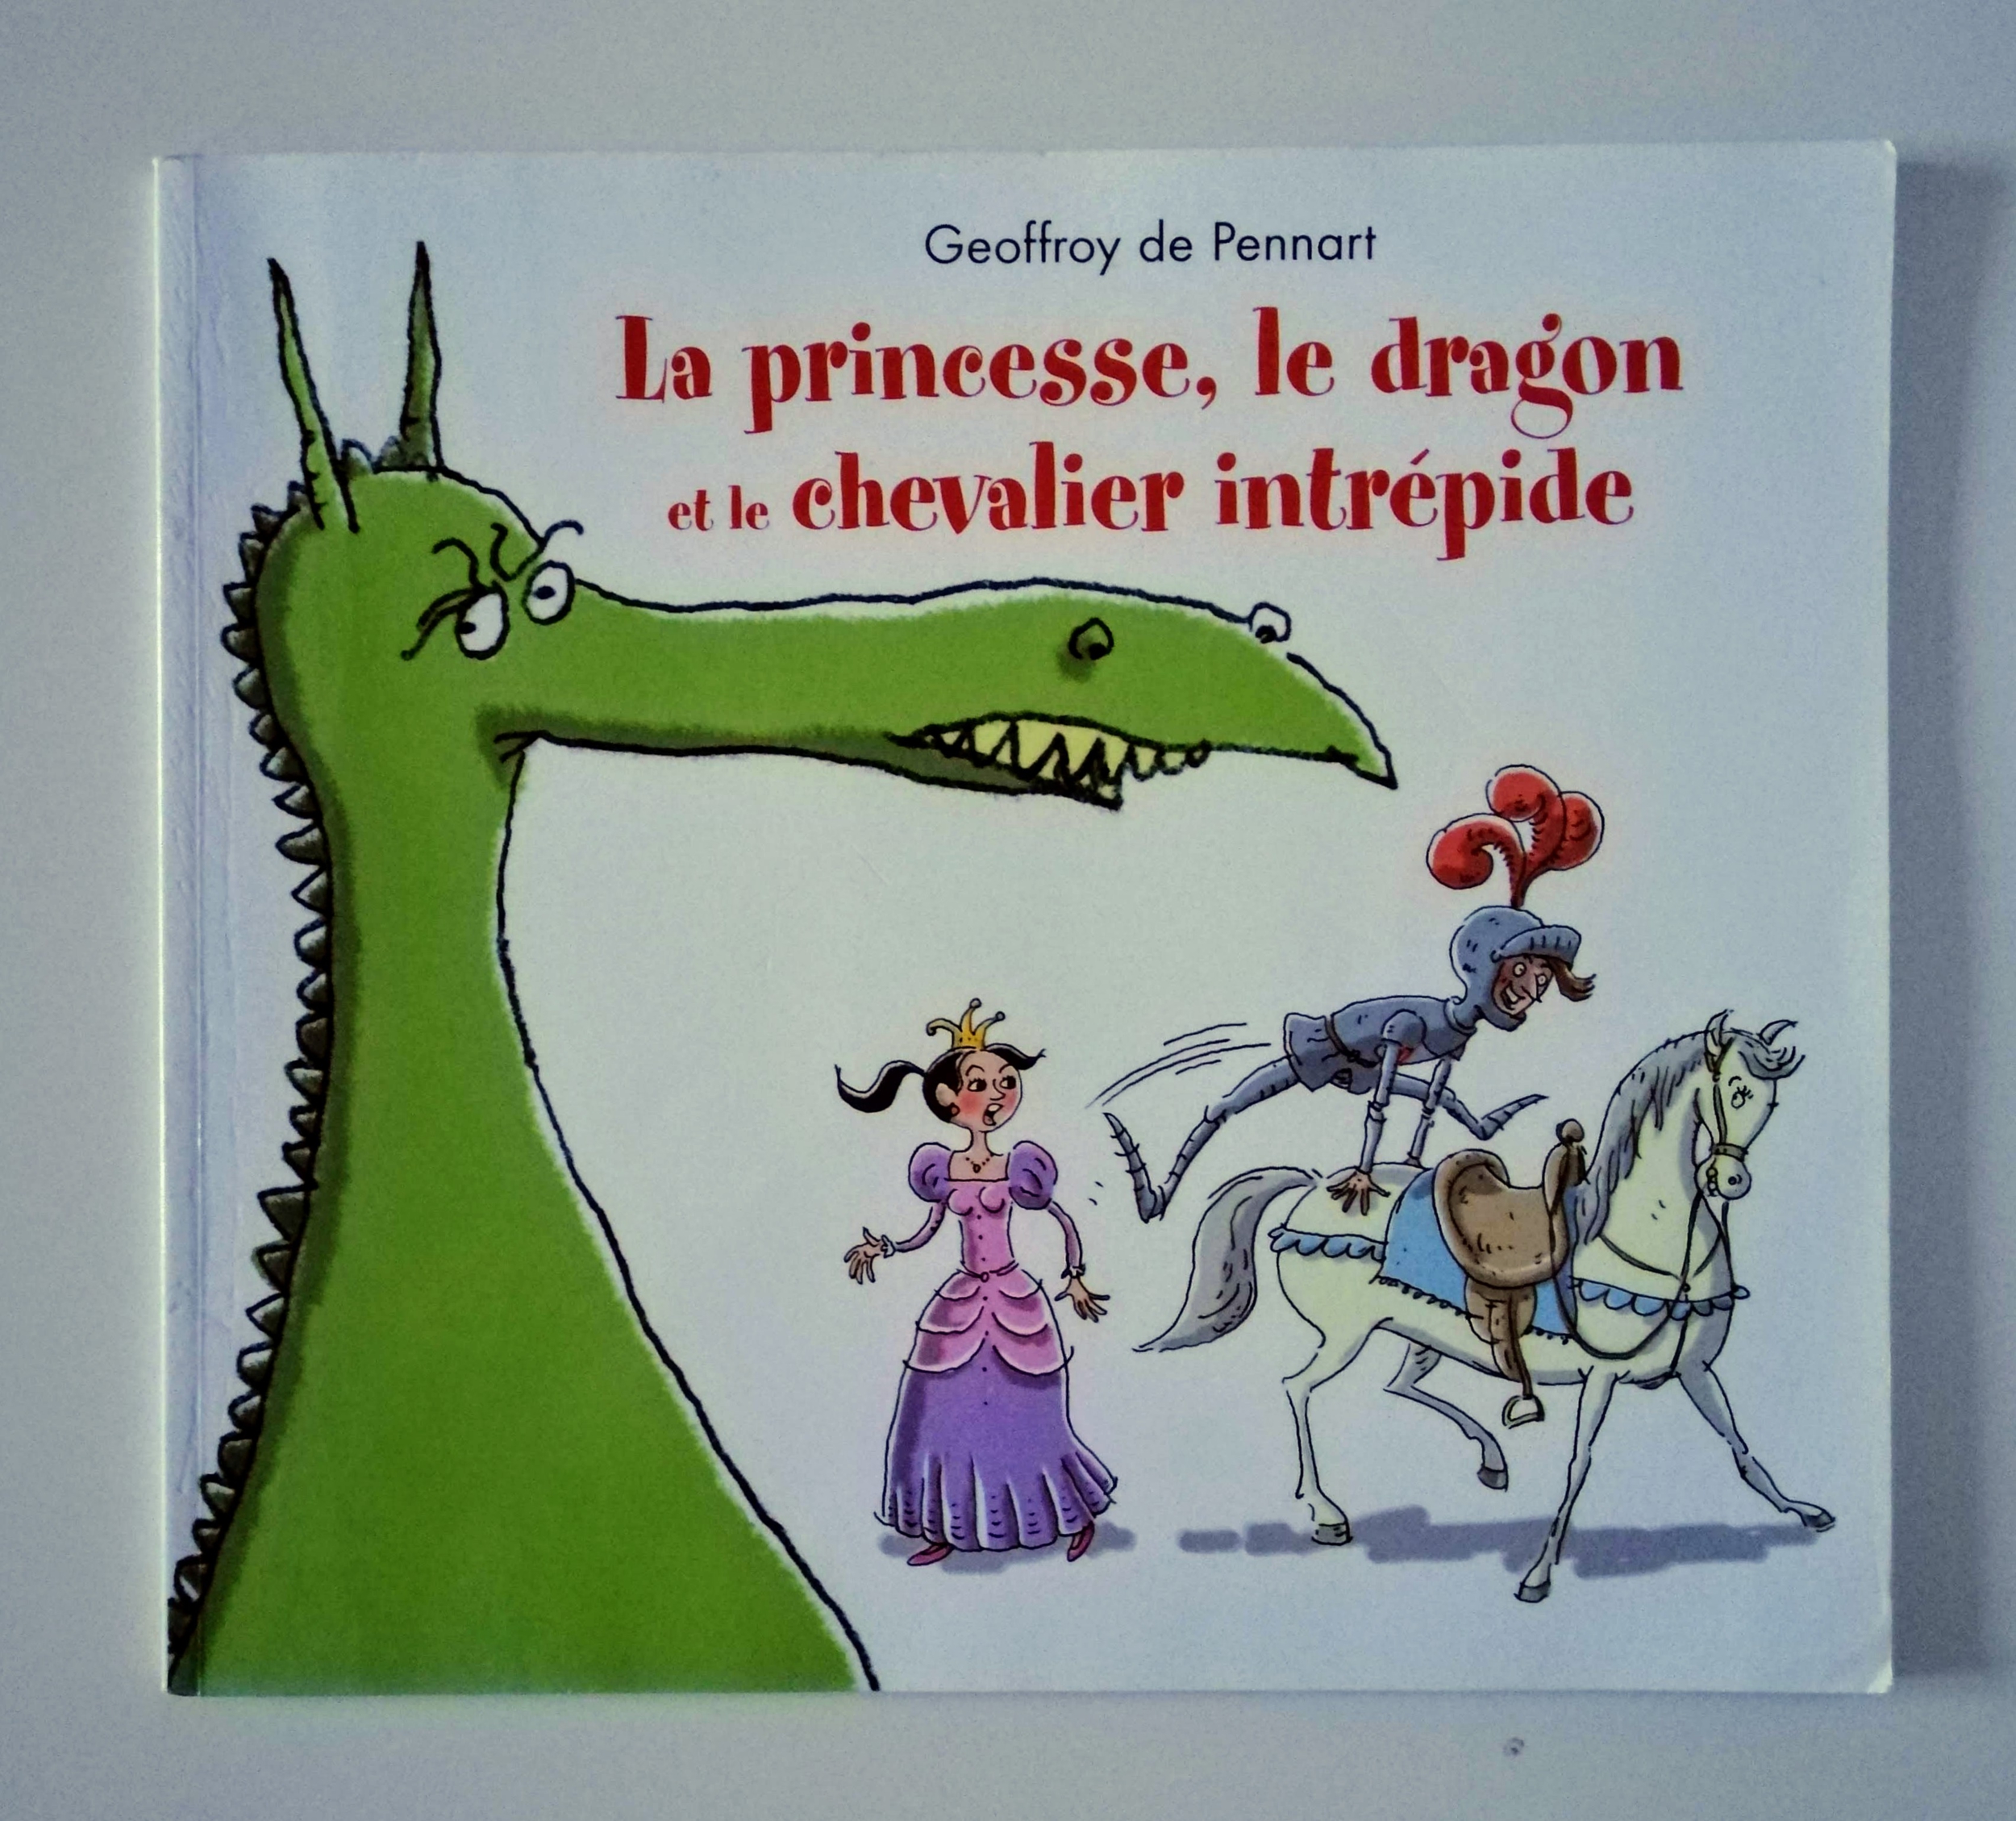 La princesse, le dragon et le chevalier intrépide (Geoffroy de Pennart)